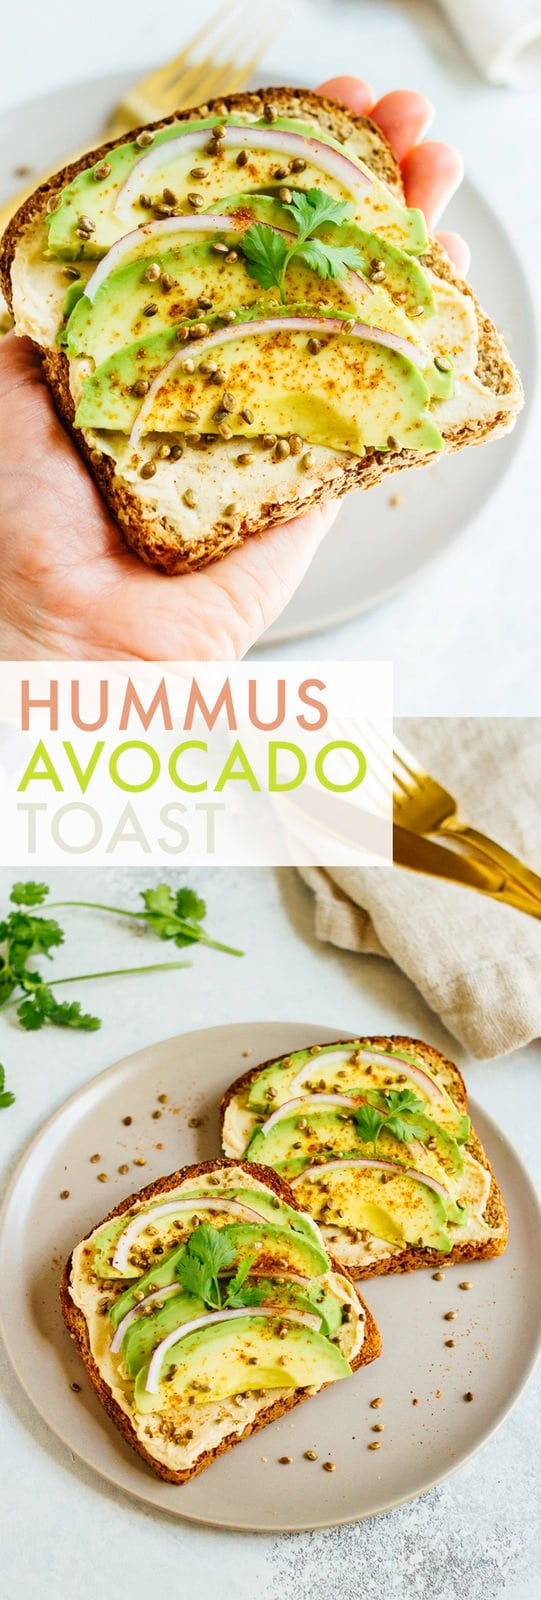 Hummus Avocado Toast with Toasted Hemp Seeds - Eating Bird Food